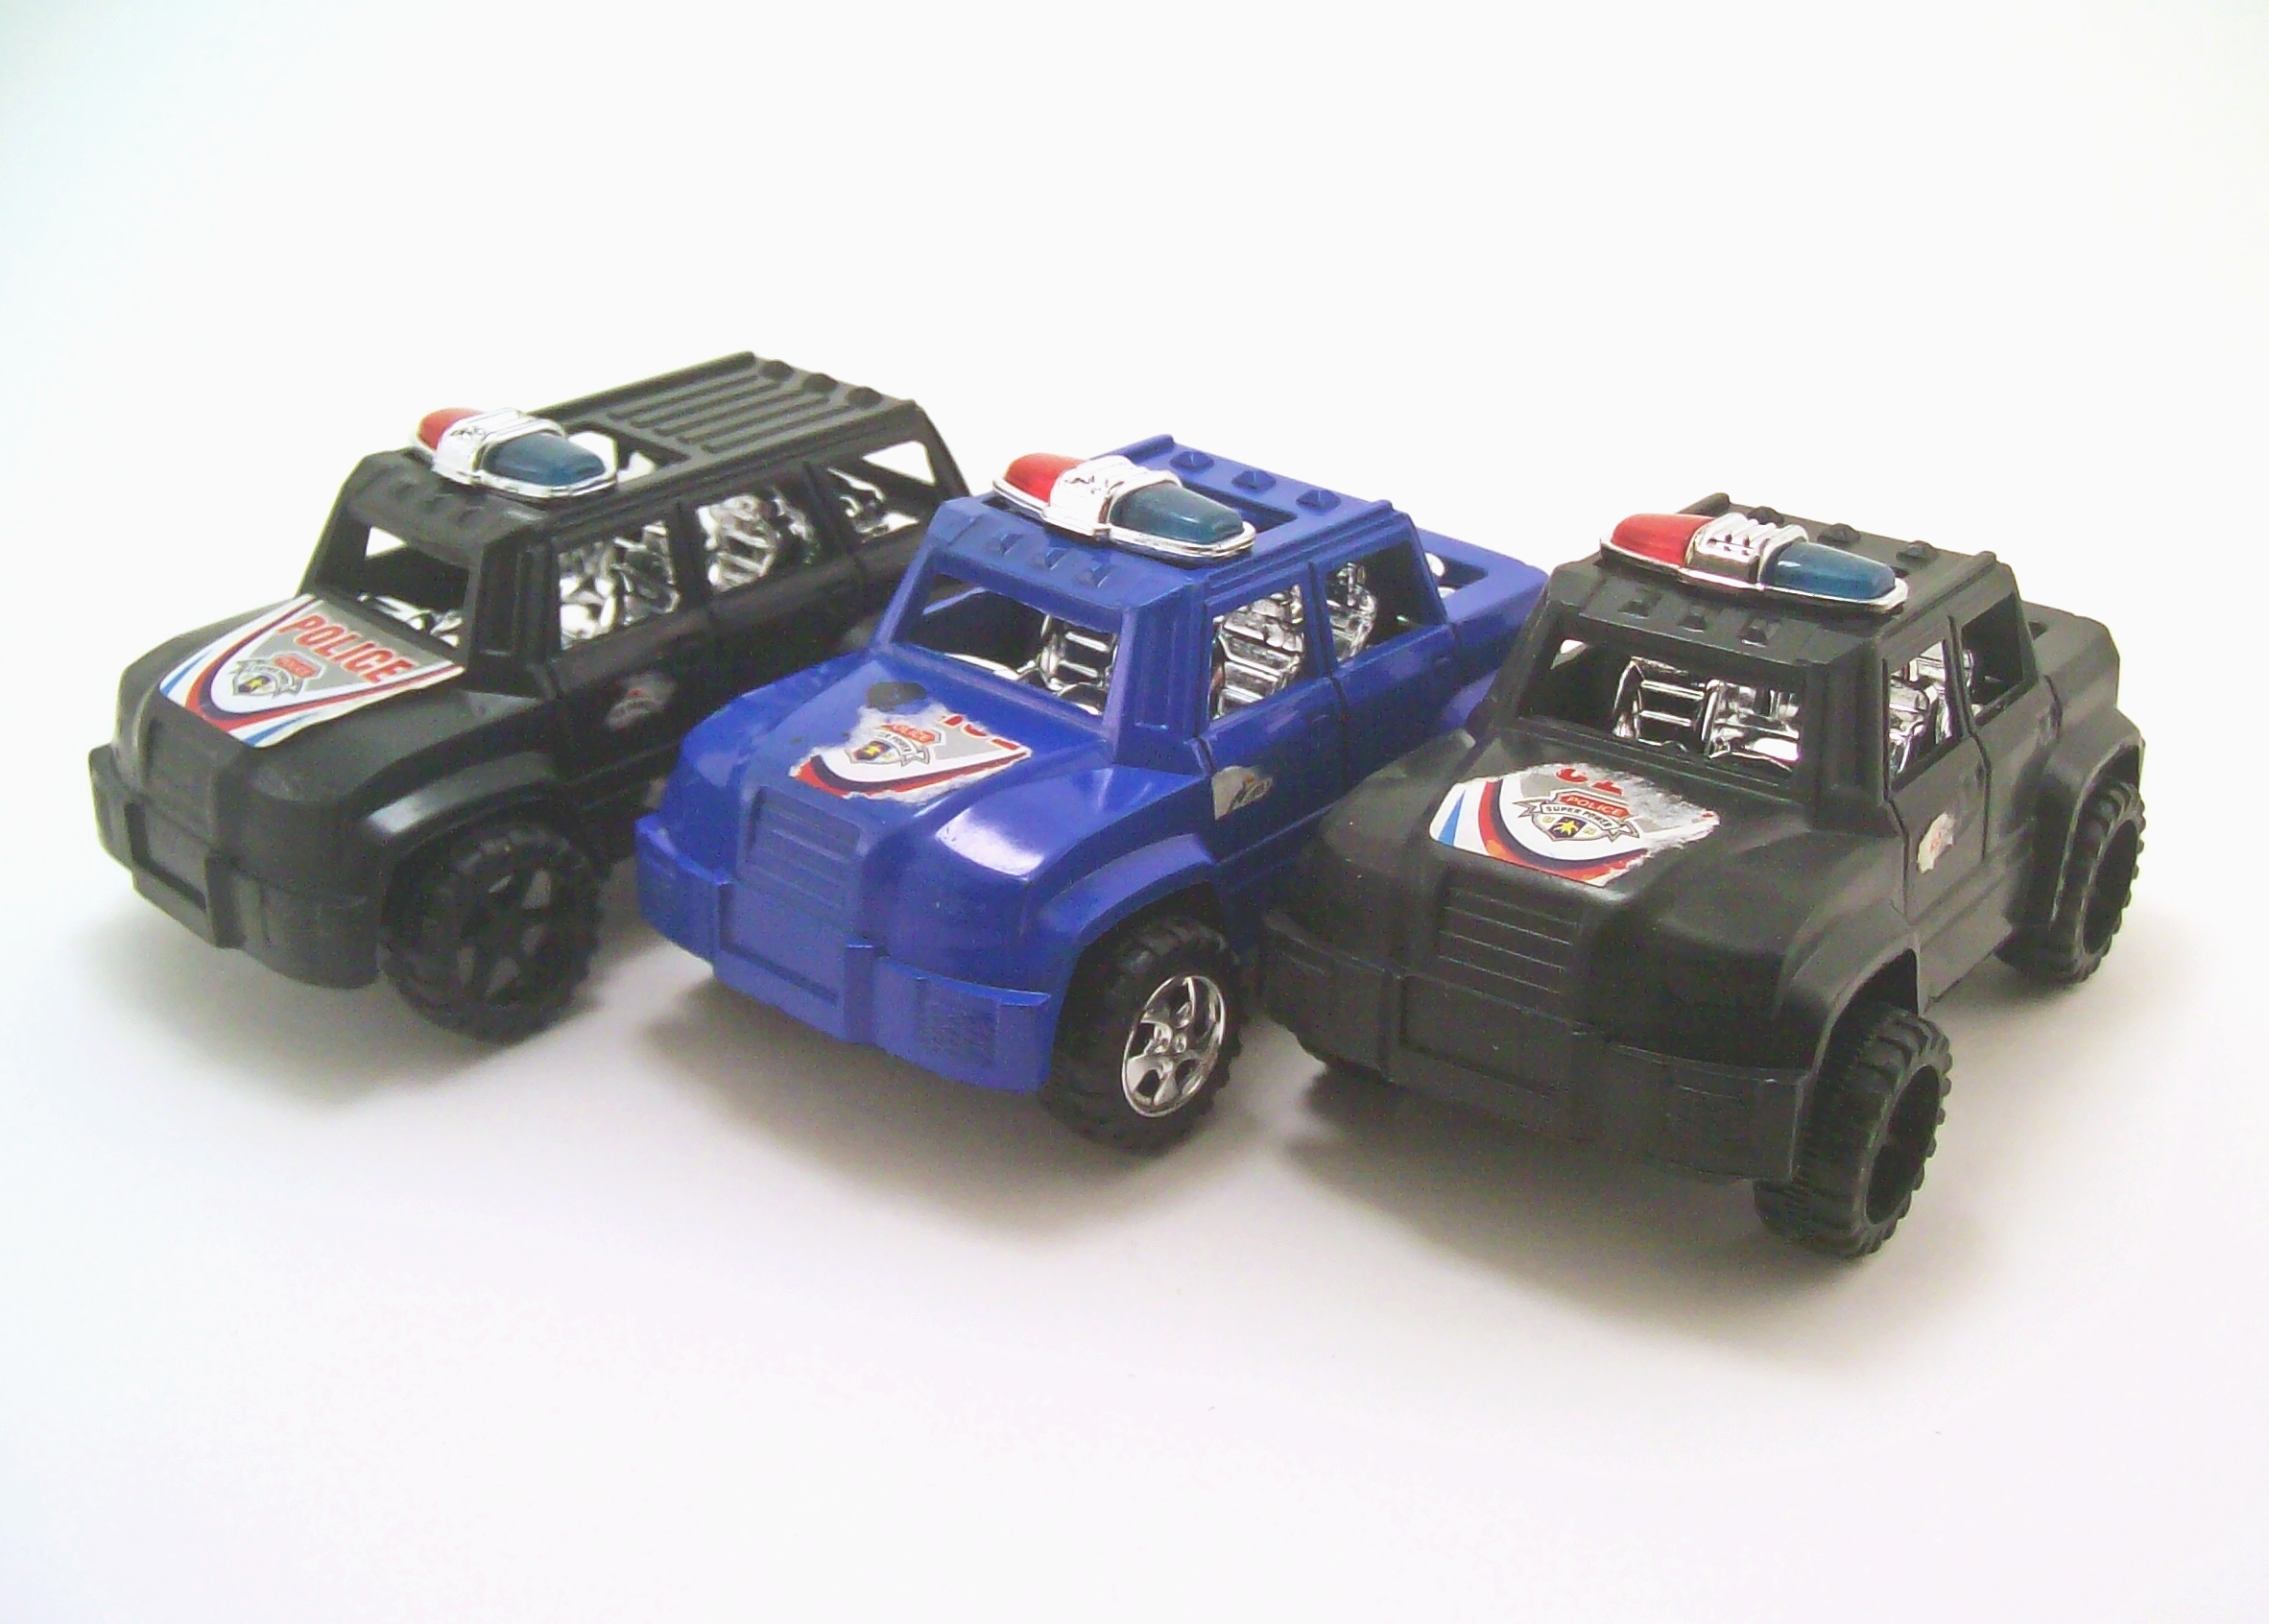 Three little cars, Black, Blue, Cars, Fun, HQ Photo